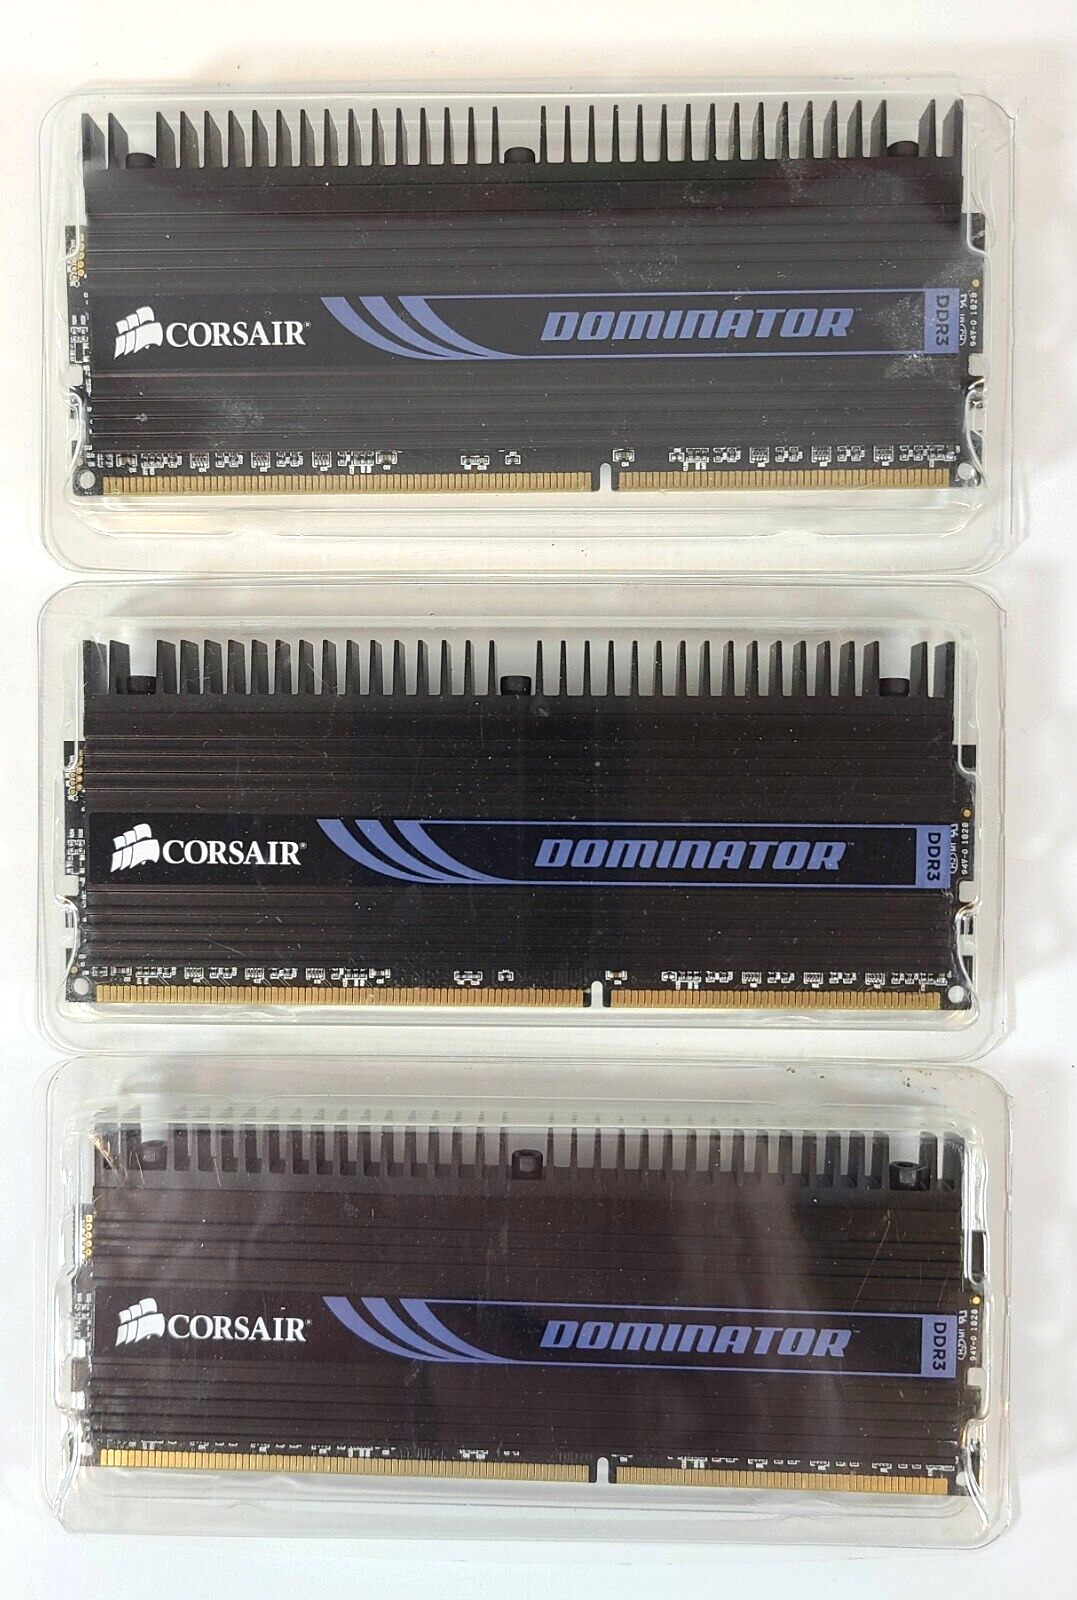 Corsair Dominator TR3X6G1600C8D 6GB (3X2GB) 1600MHZ DDR3